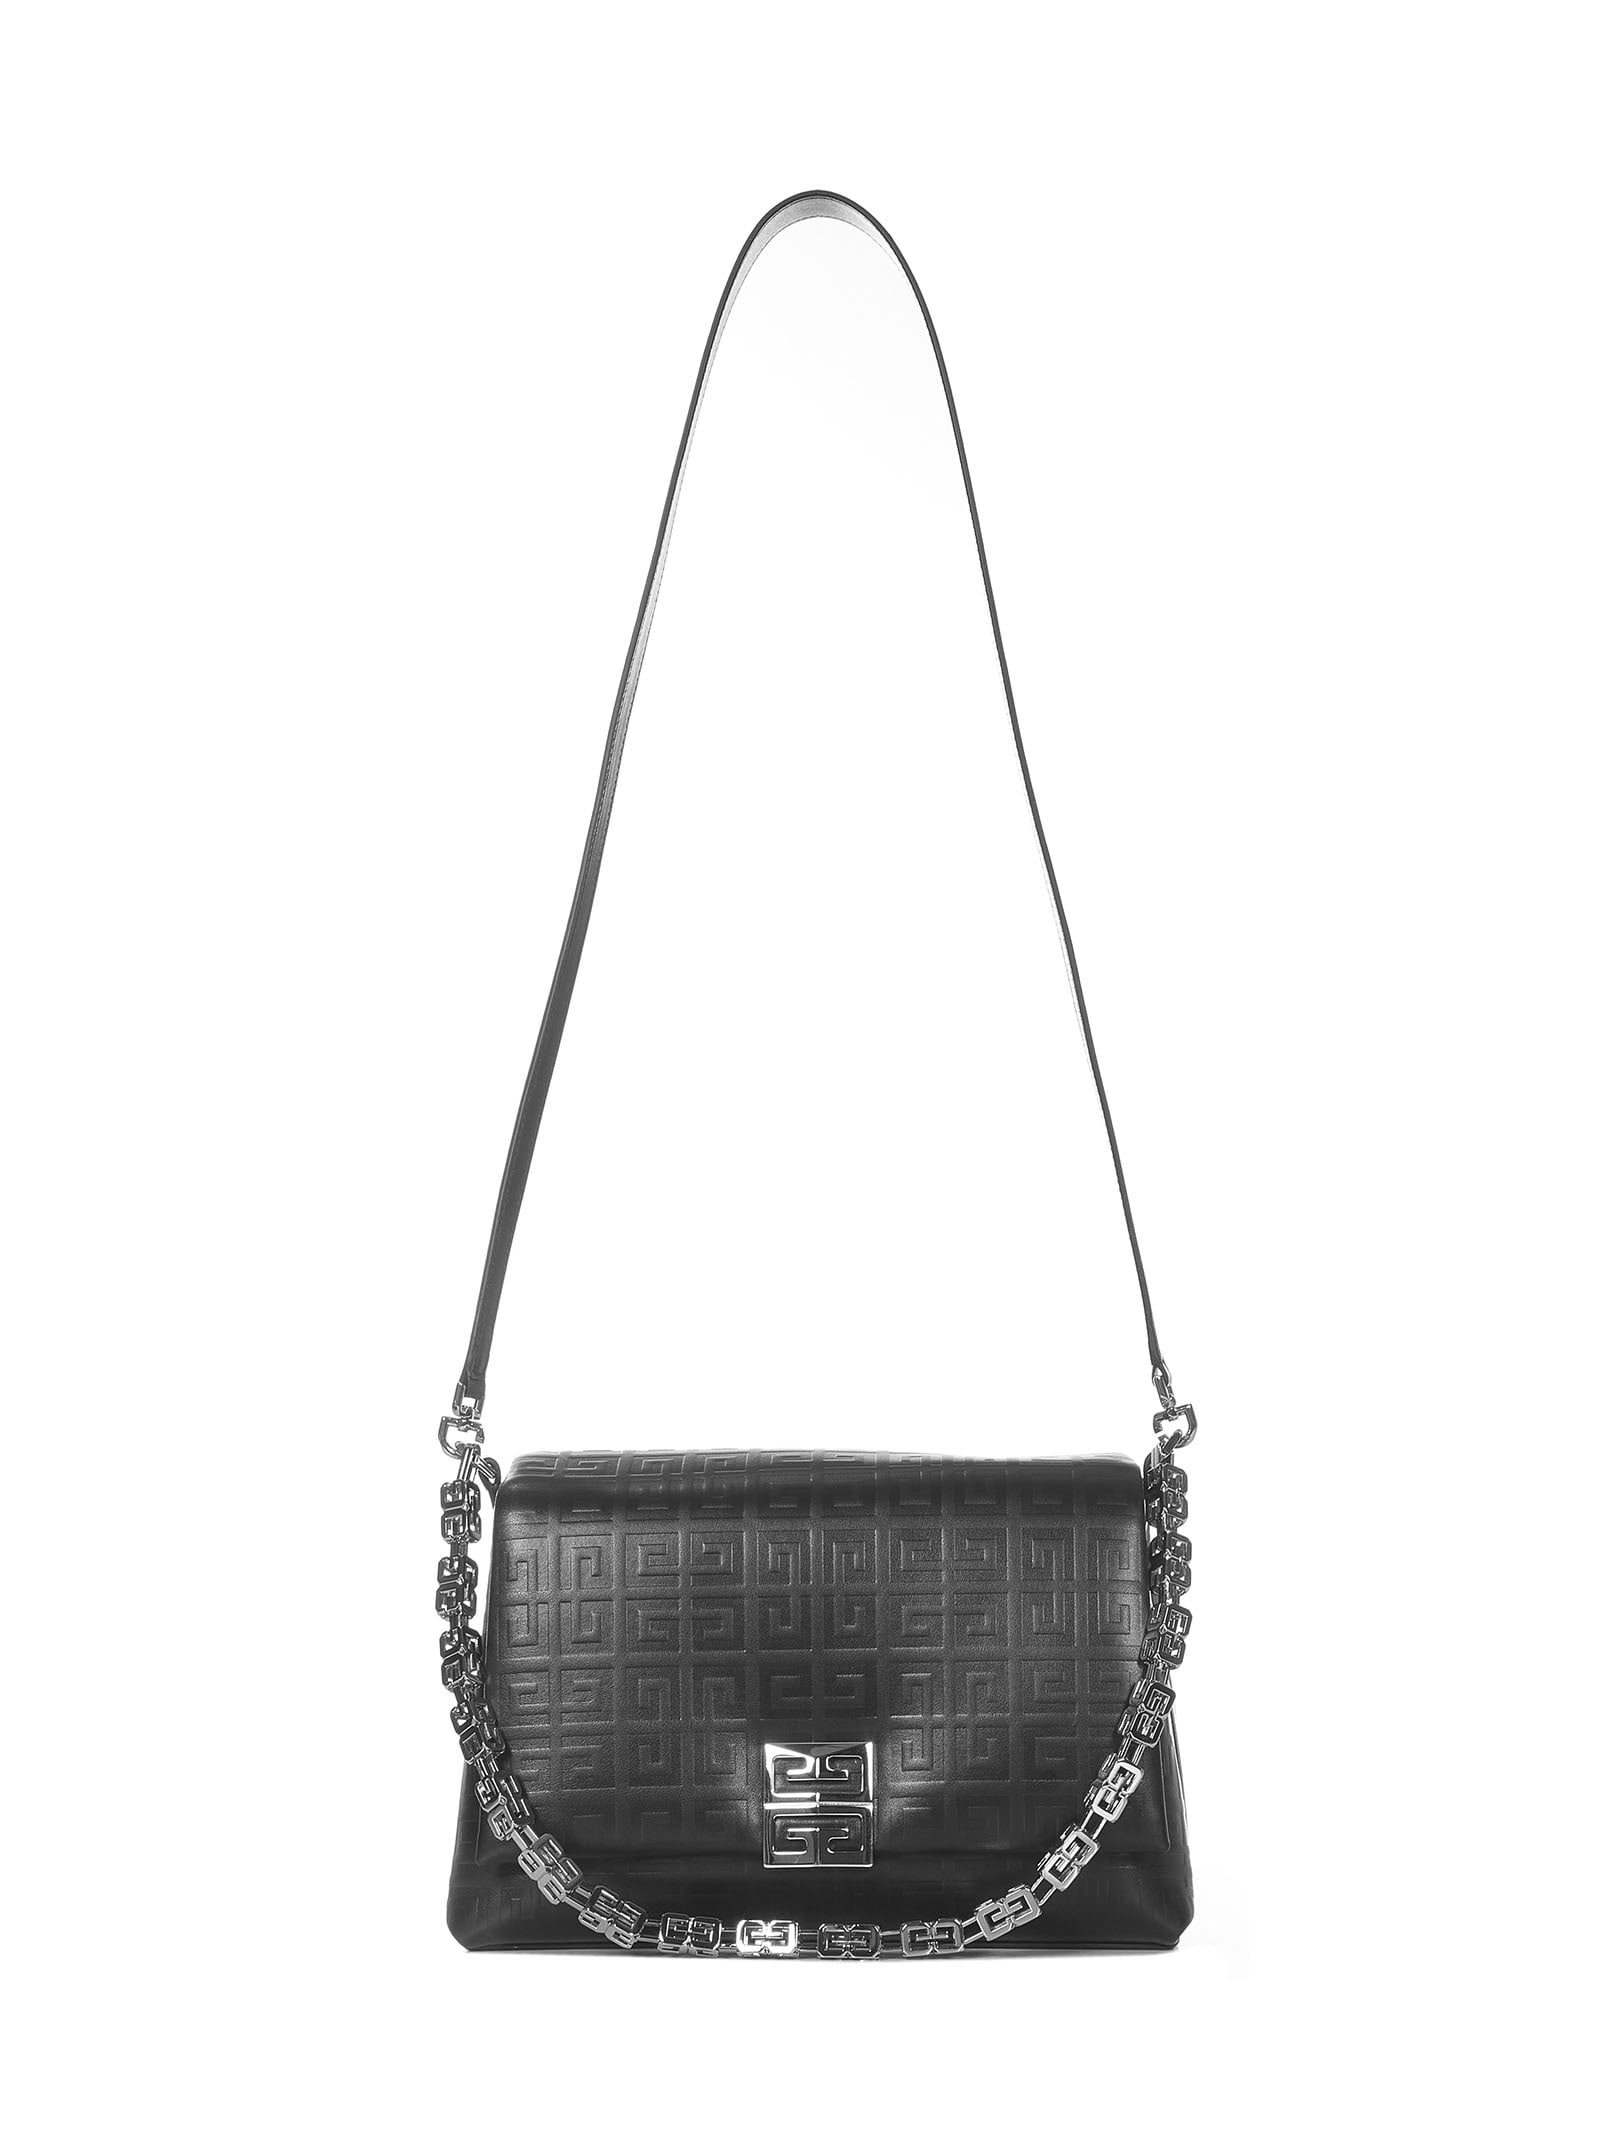 Givenchy 4g Soft Medium Shoulder Bag